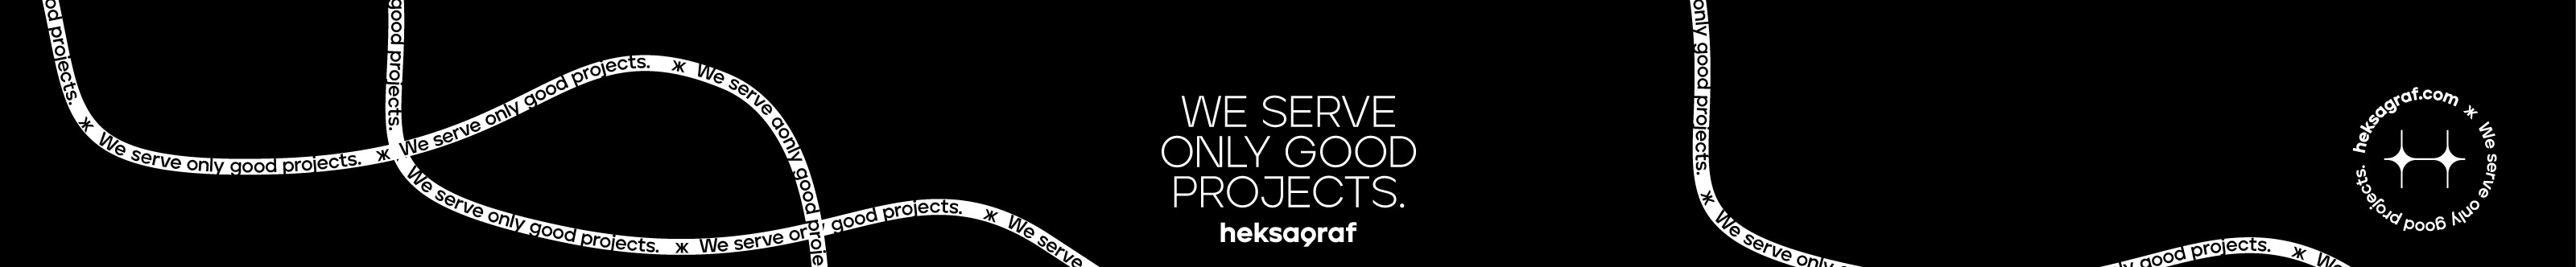 heksagraf agency's profile banner